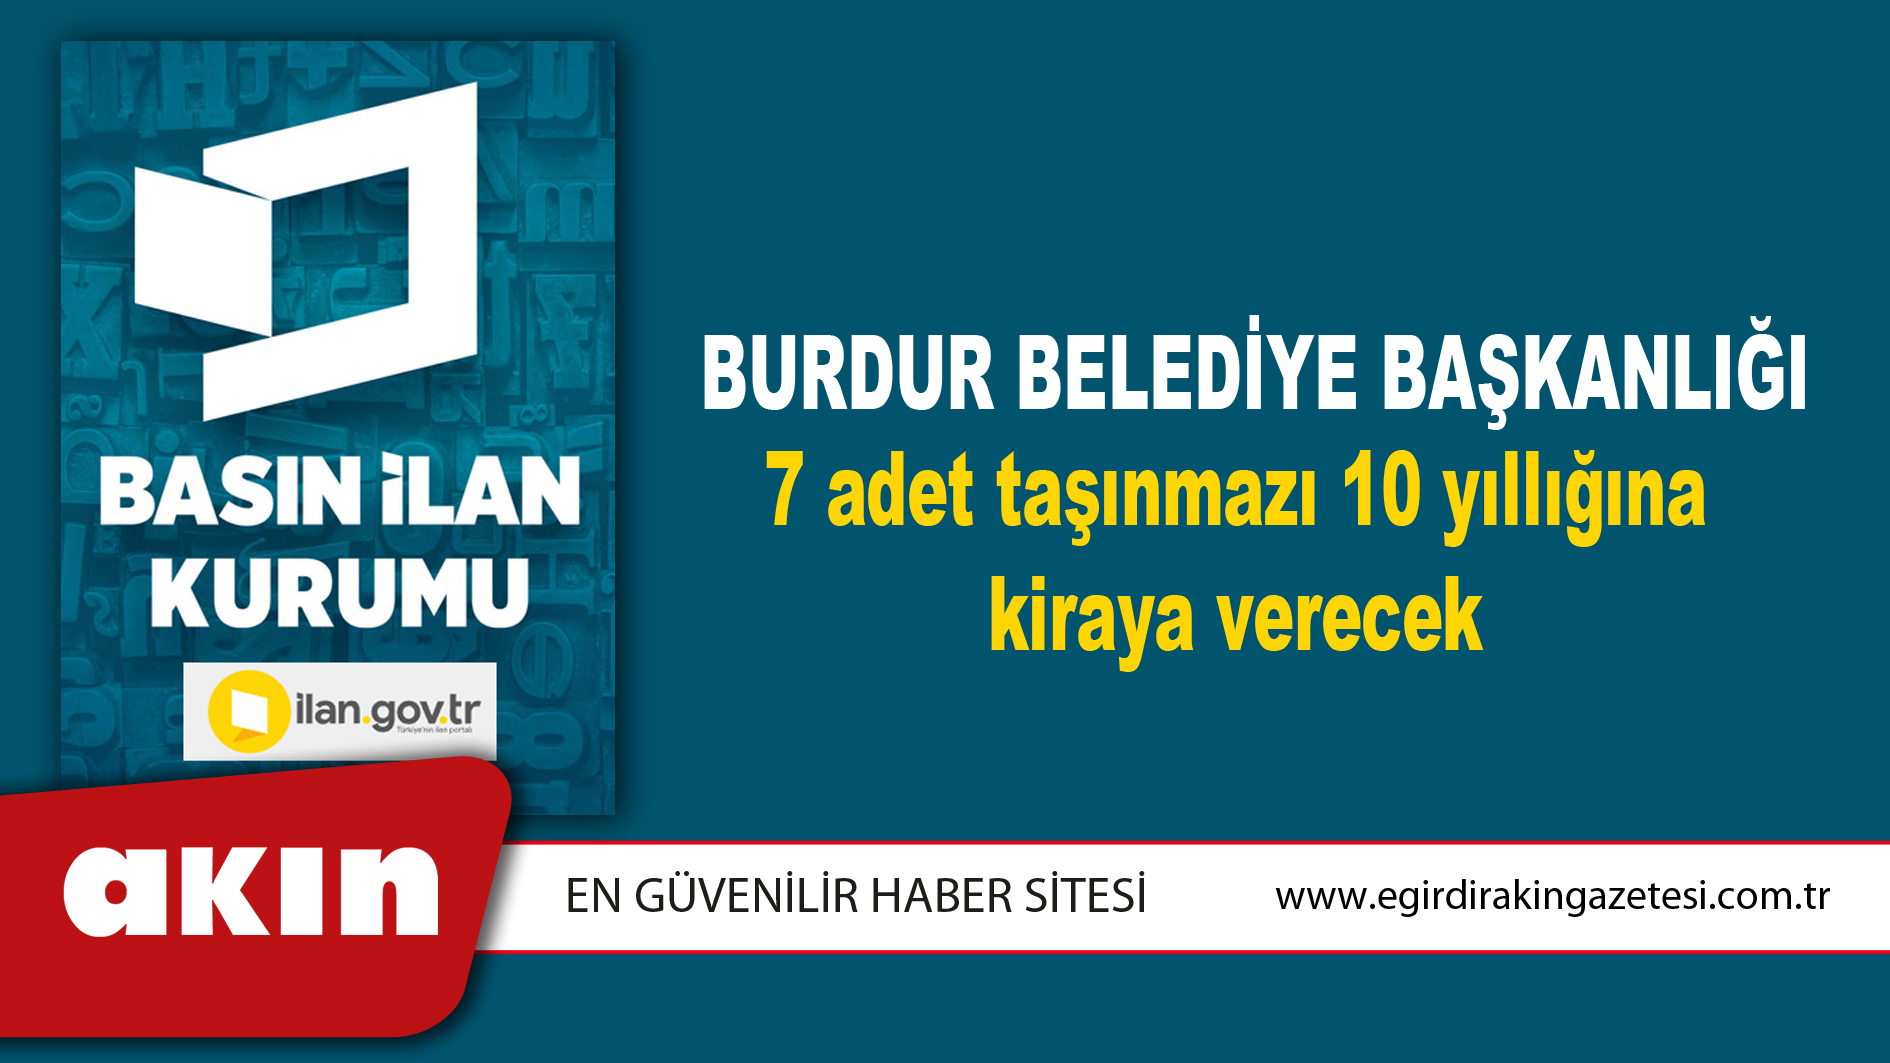 Burdur Belediye Başkanlığı 7 adet taşınmazı 10 yıllığına kiraya verecek